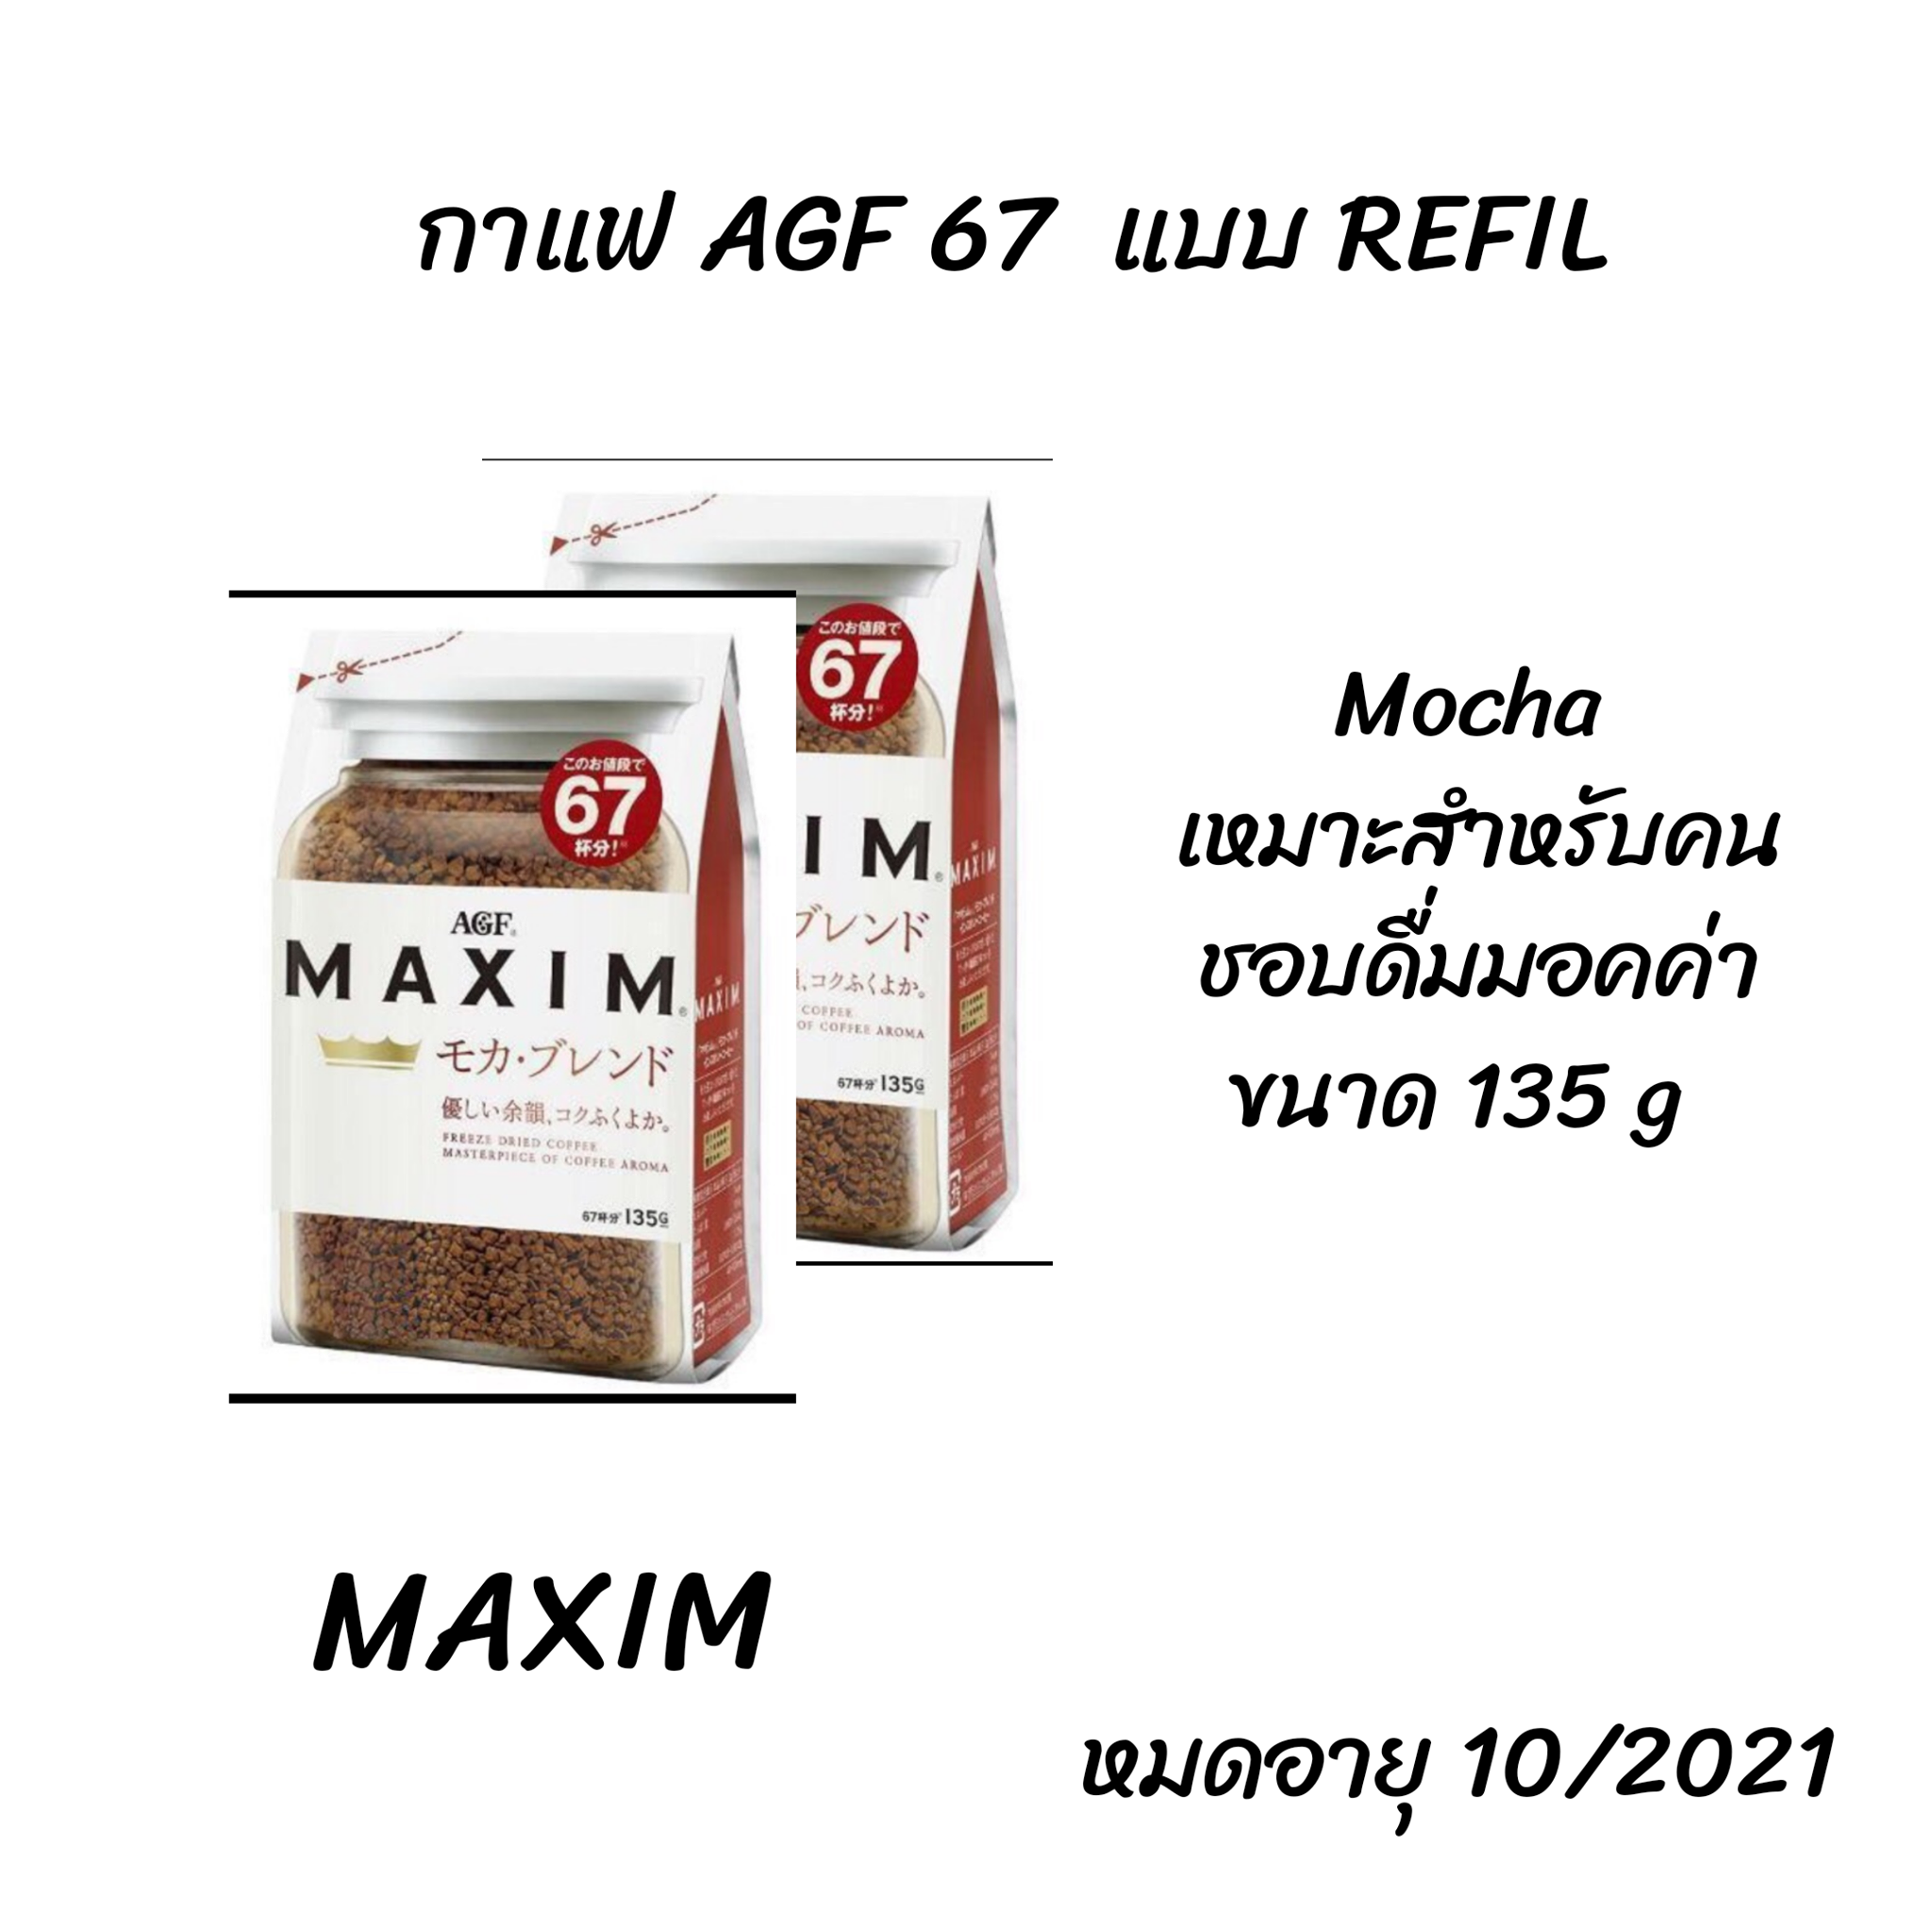 Maxim Mocha Coffee กาแฟแม็กซิม กาแฟพร้อมชง กาแฟคั่วบด ผสมม็อคค่า ถุงสีขาว กาแฟญี่ปุ่น ขนาด 135 g แบบ refil